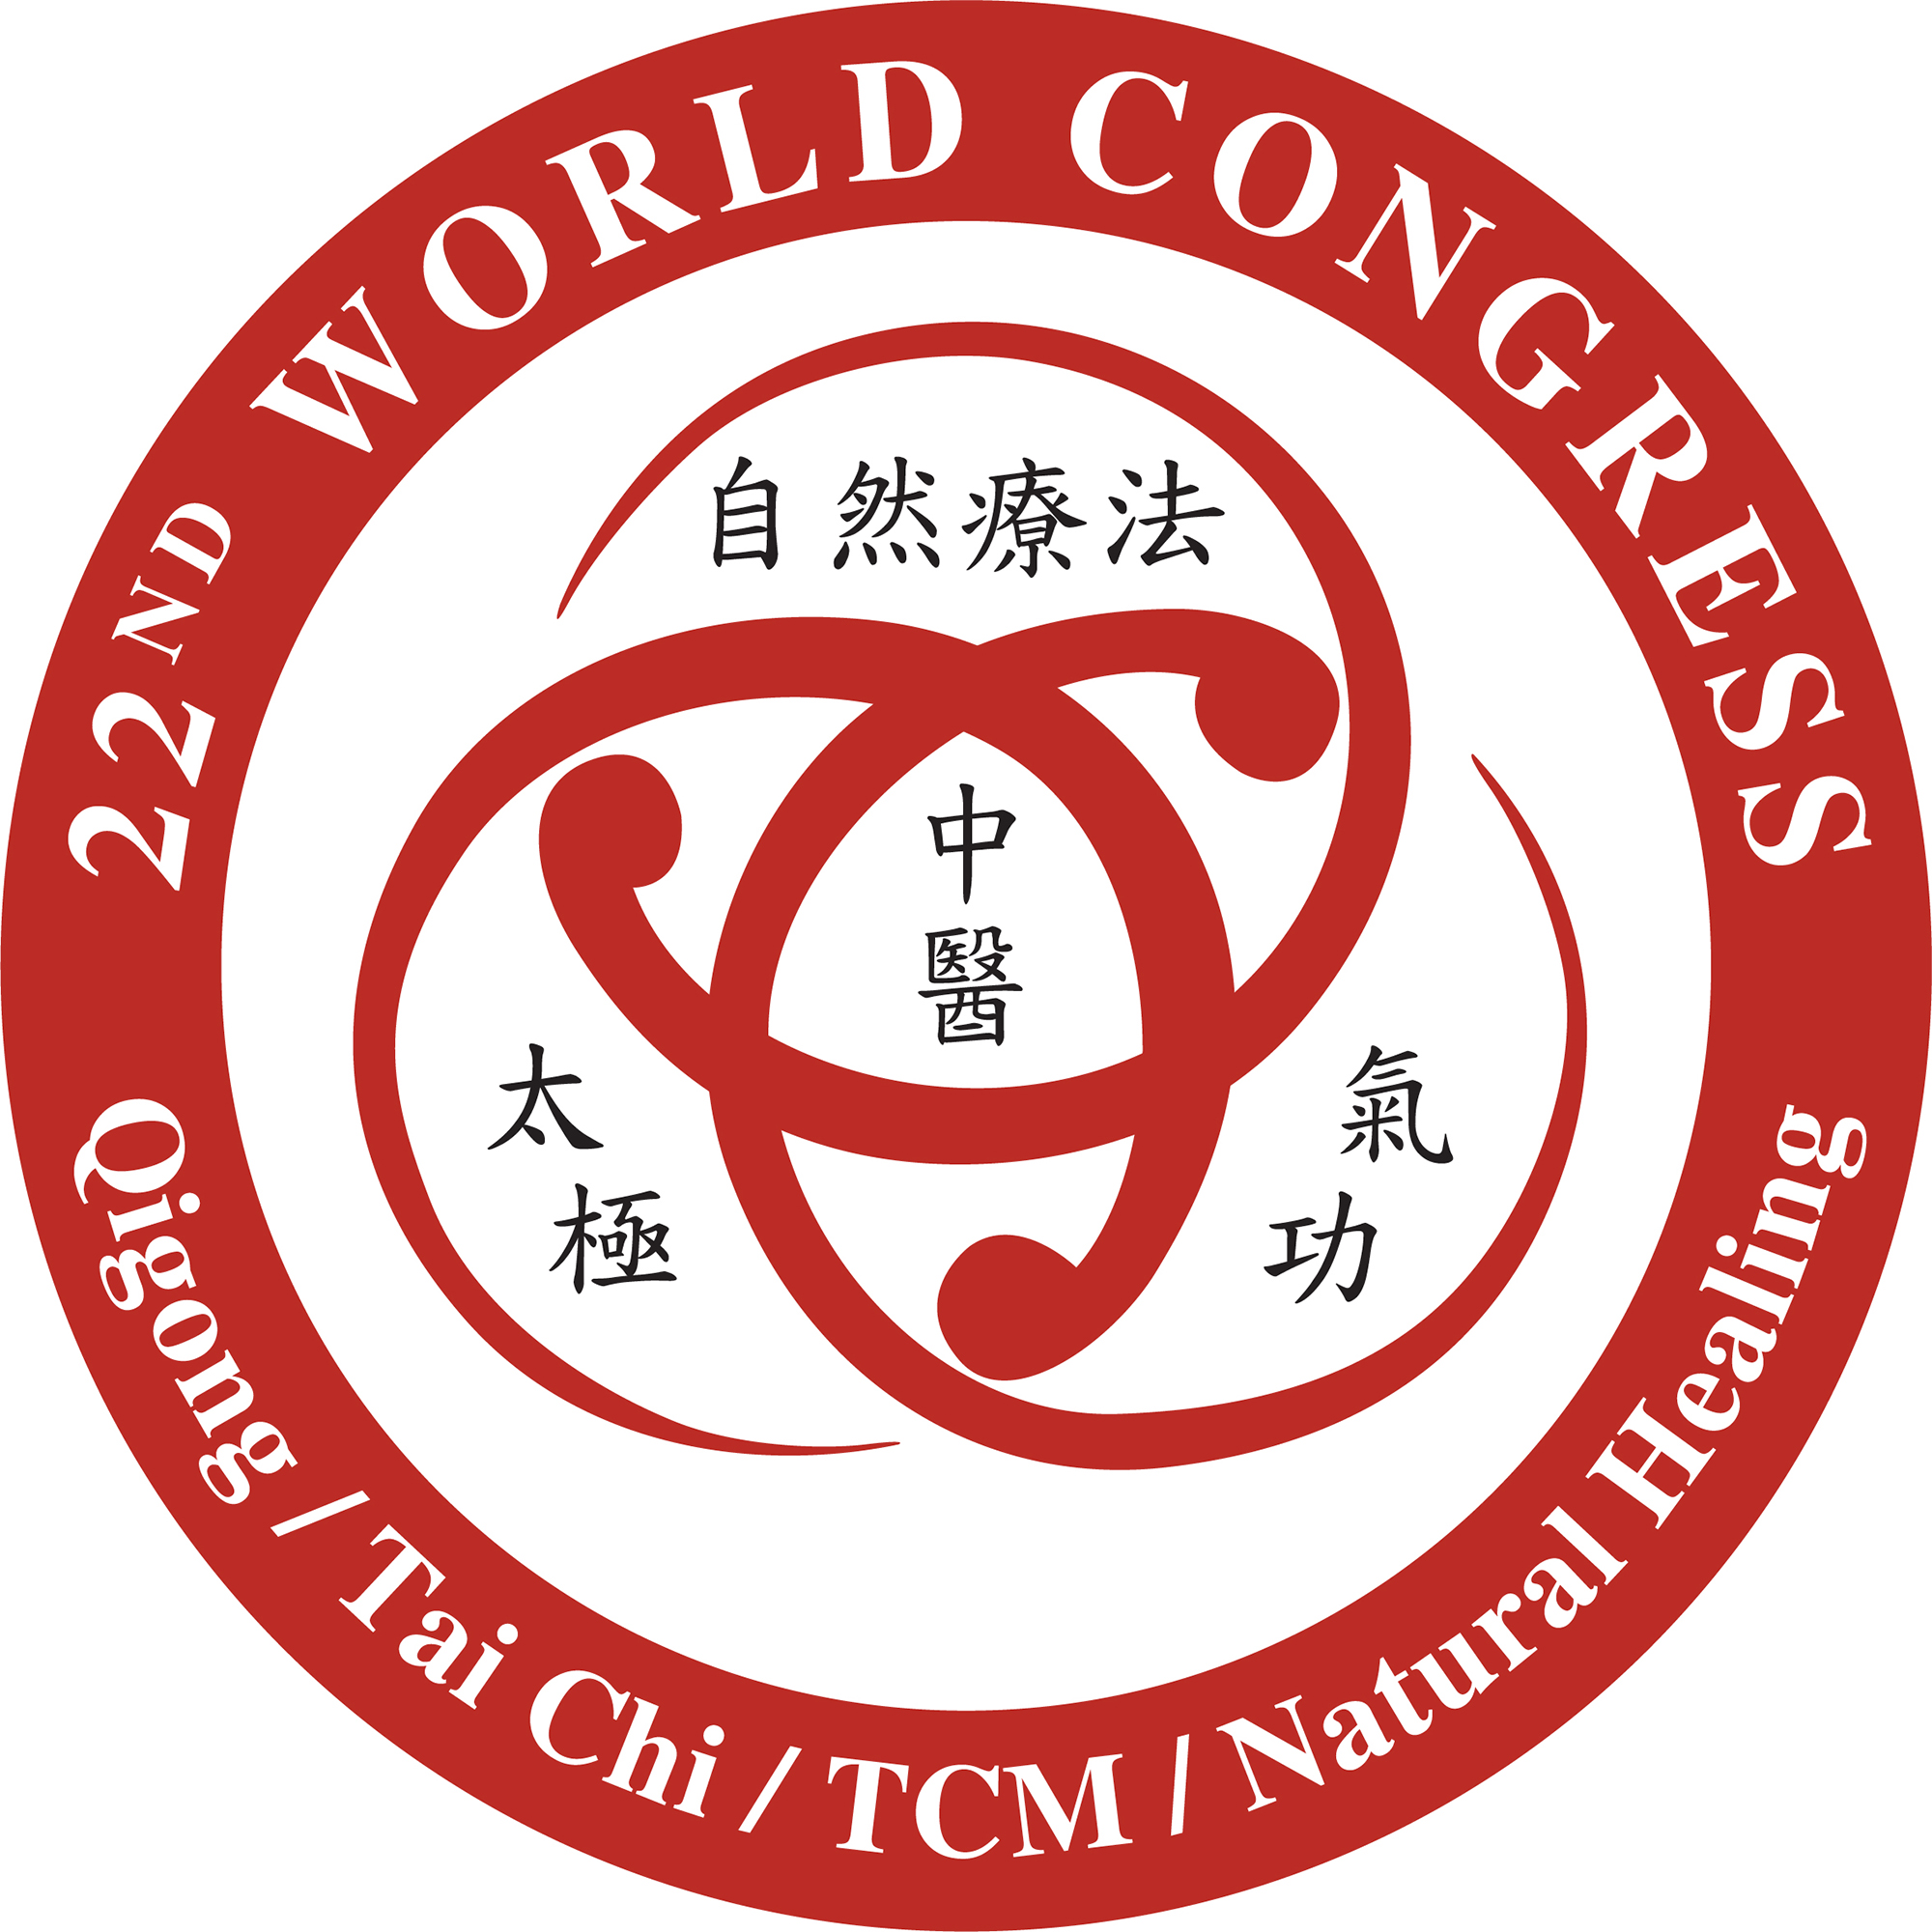 22nd Congress Logo